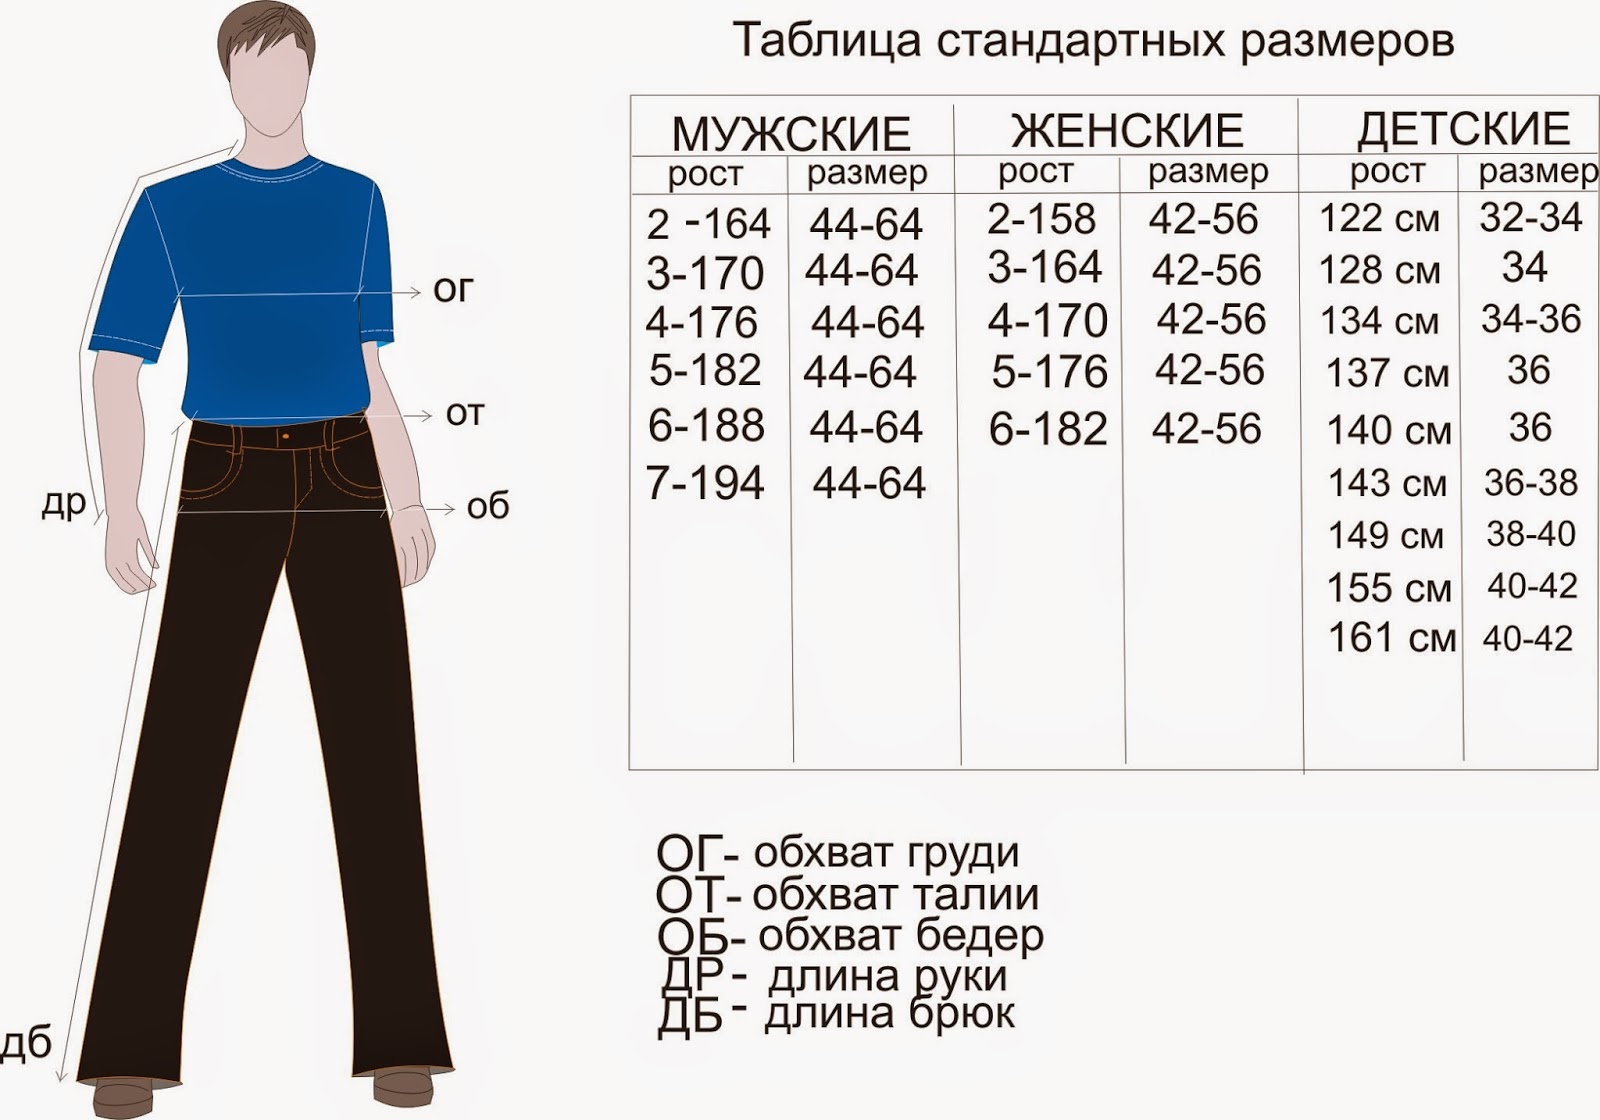 Вес и размер одежды для мужчин. Размеры штанов мужских таблица на рост 176. Размер штанов на рост 170 мужские. Размеры штанов мужских таблица рост 182. Мужские брюки таблица размеров и роста.